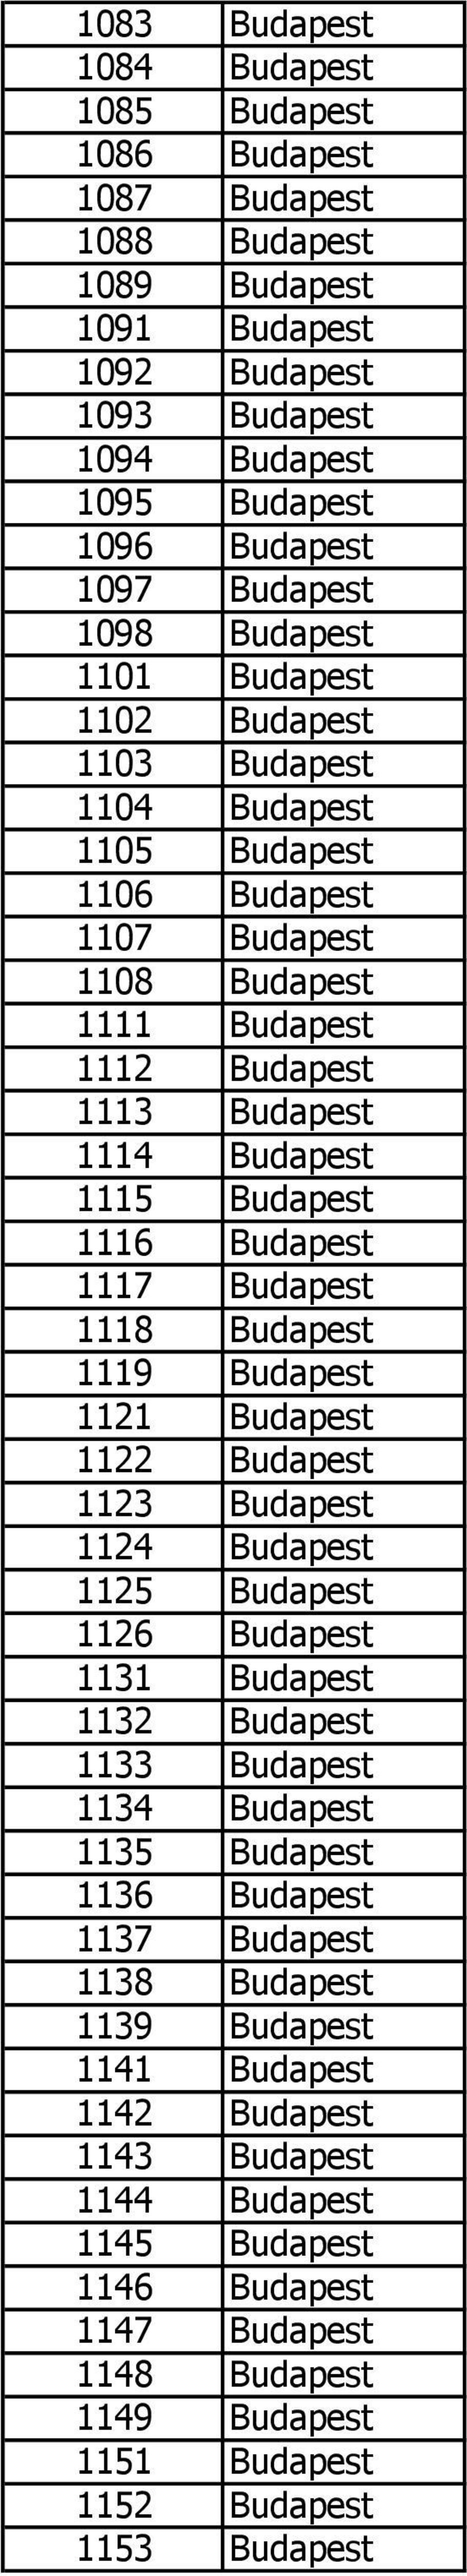 1116 Budapest 1117 Budapest 1118 Budapest 1119 Budapest 1121 Budapest 1122 Budapest 1123 Budapest 1124 Budapest 1125 Budapest 1126 Budapest 1131 Budapest 1132 Budapest 1133 Budapest 1134 Budapest